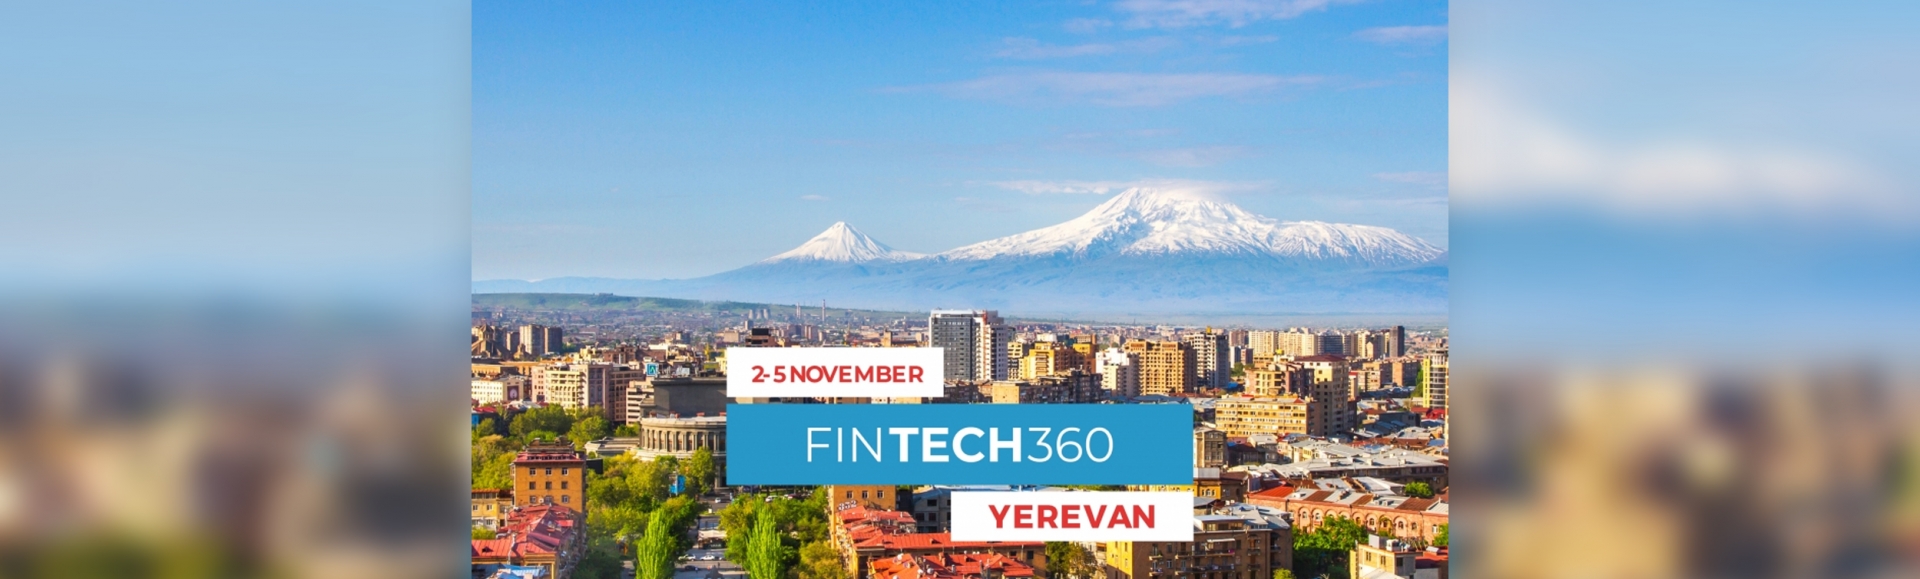 Նոյեմբերին Երևանում կկայանա FINTECH360 միջազգային համաժողովը